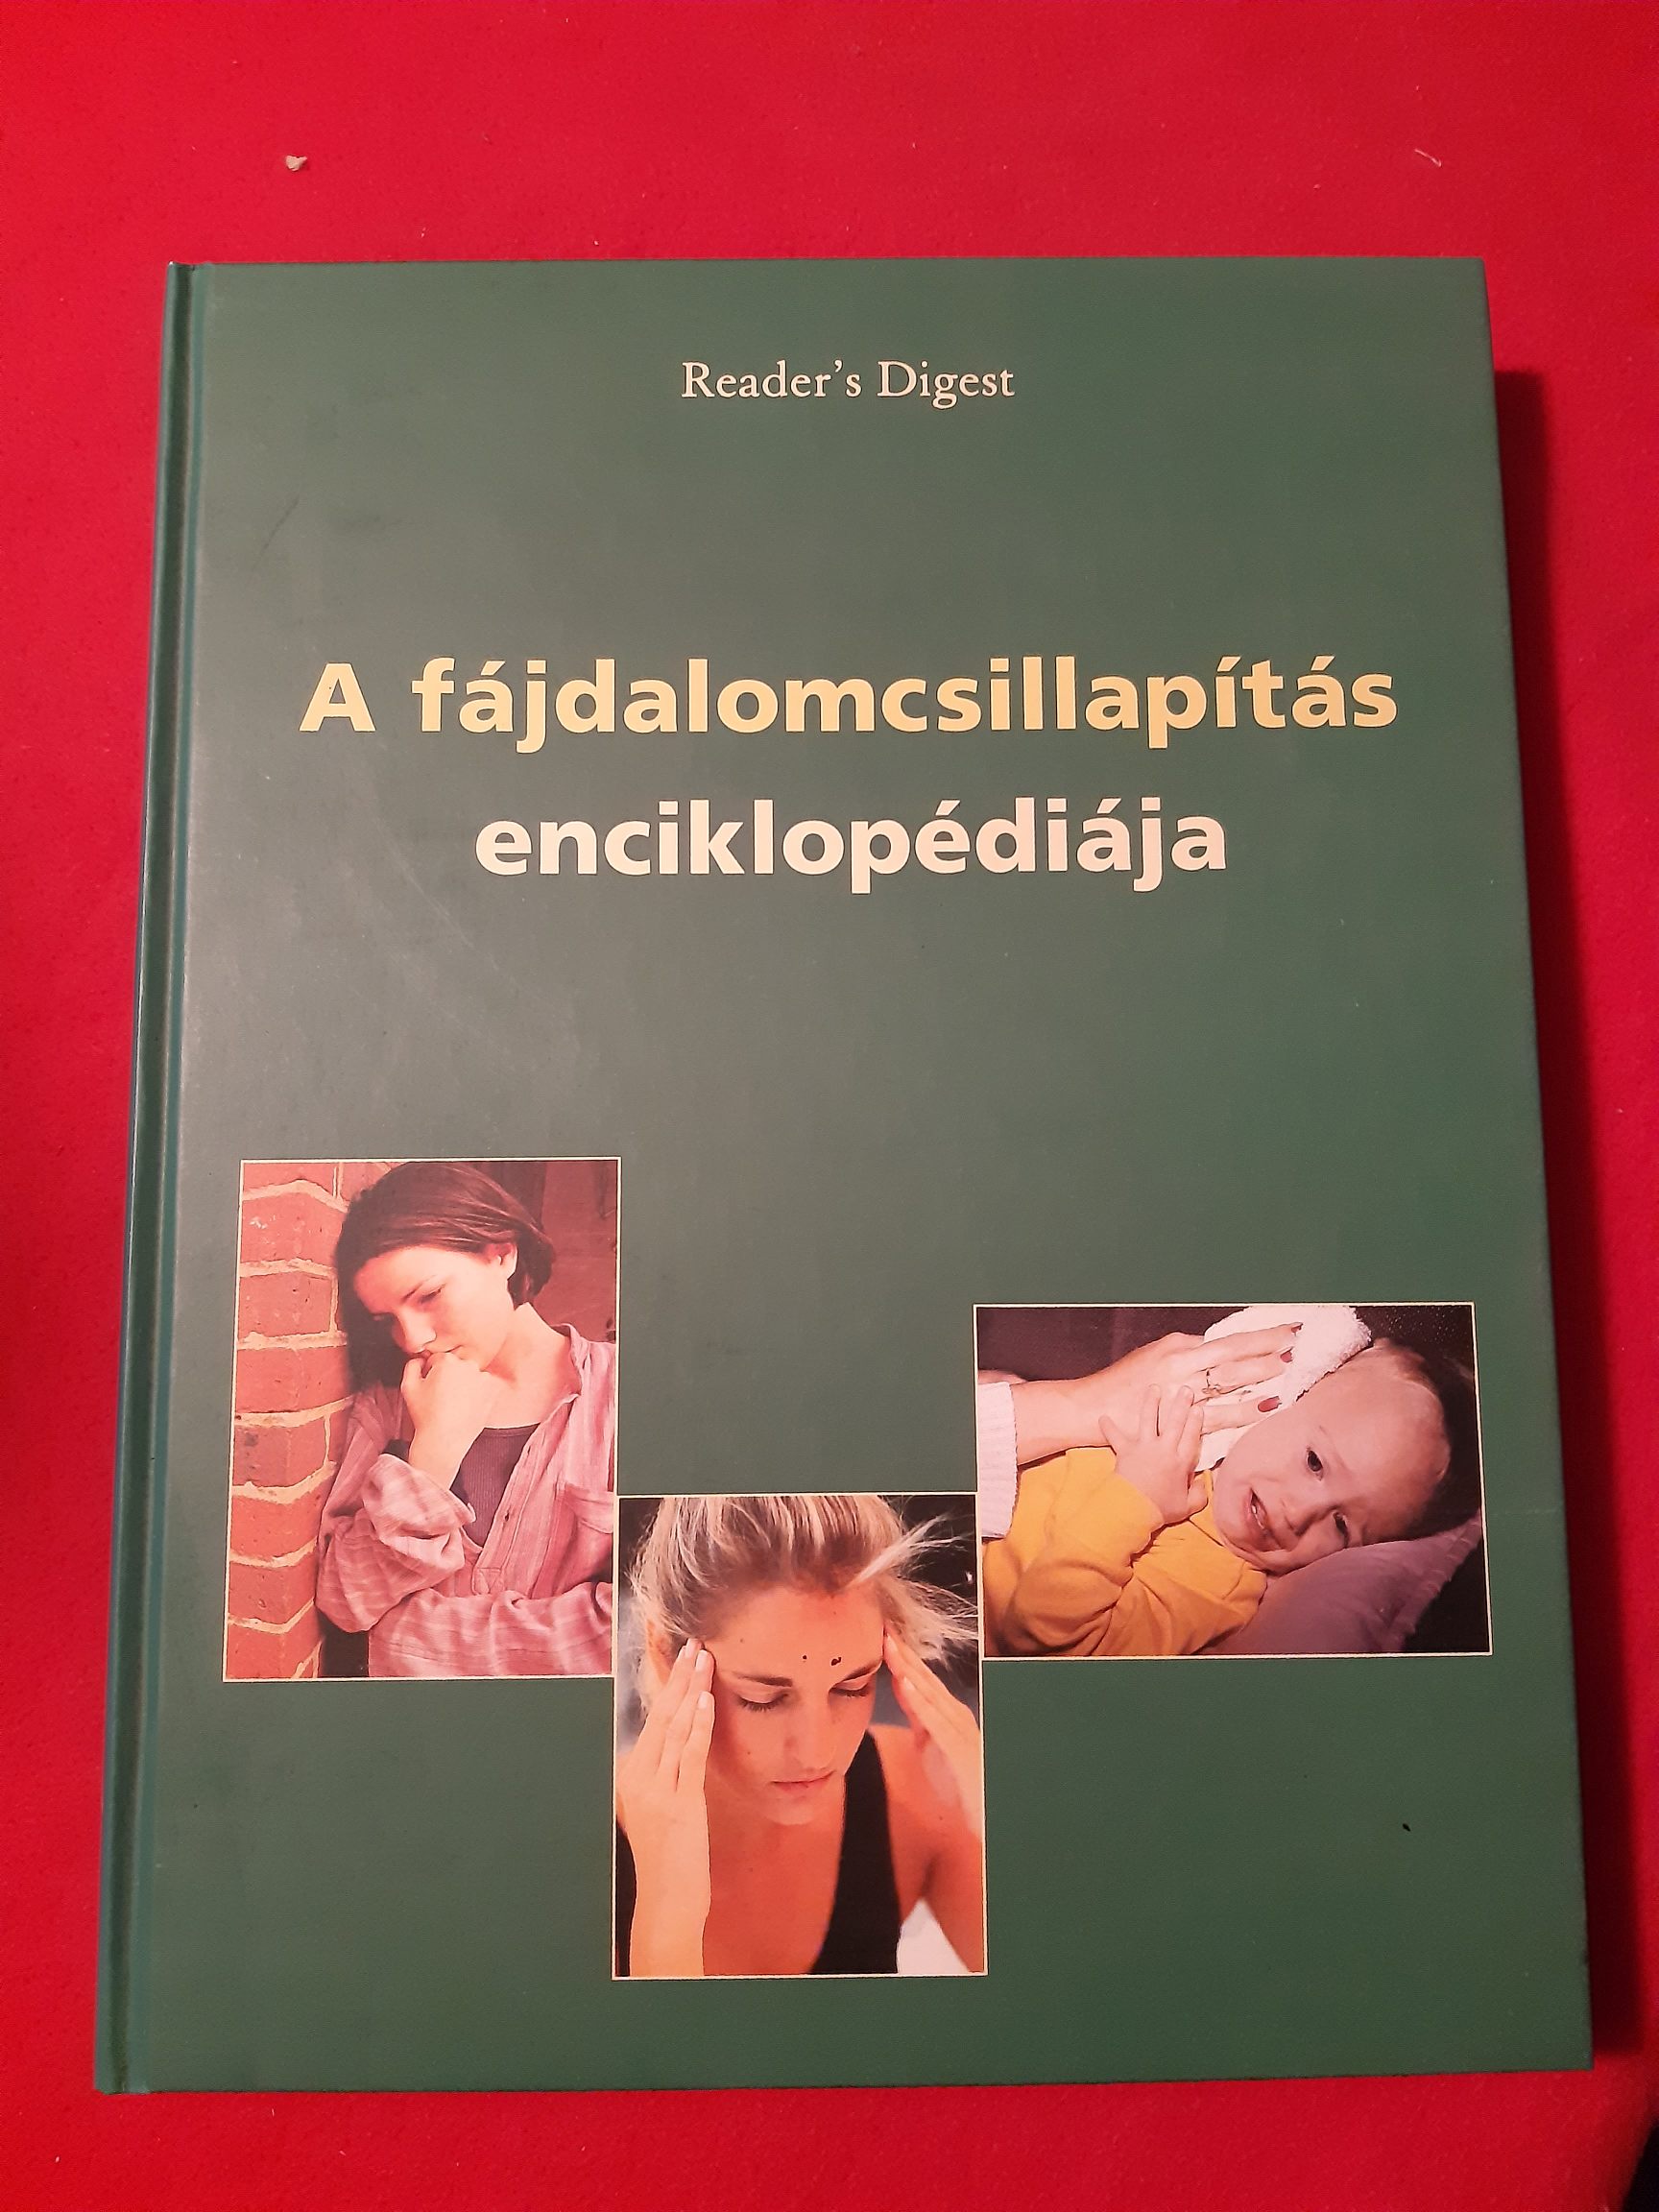 A fájdalomcsillapítás enciklopédiája